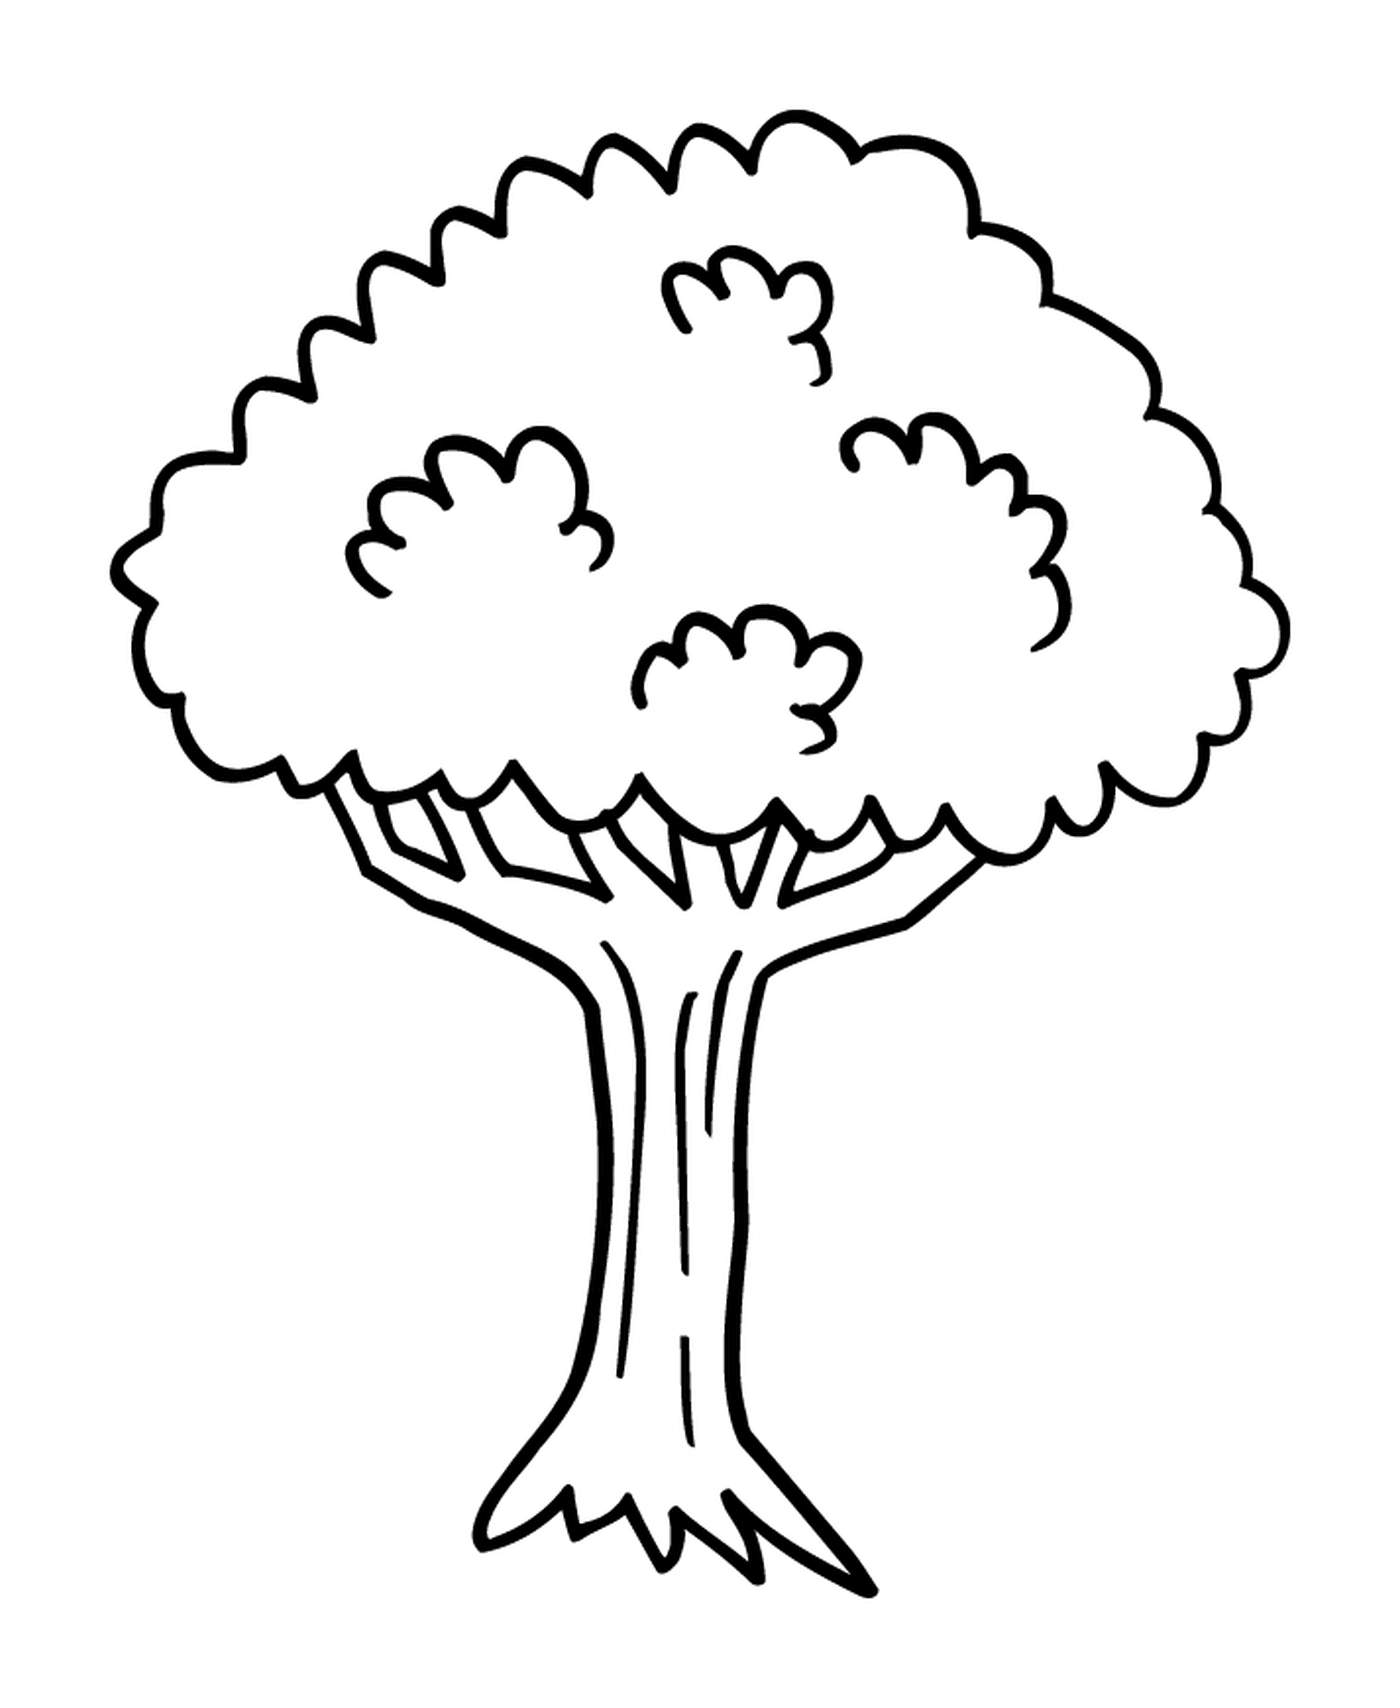  Дерево 